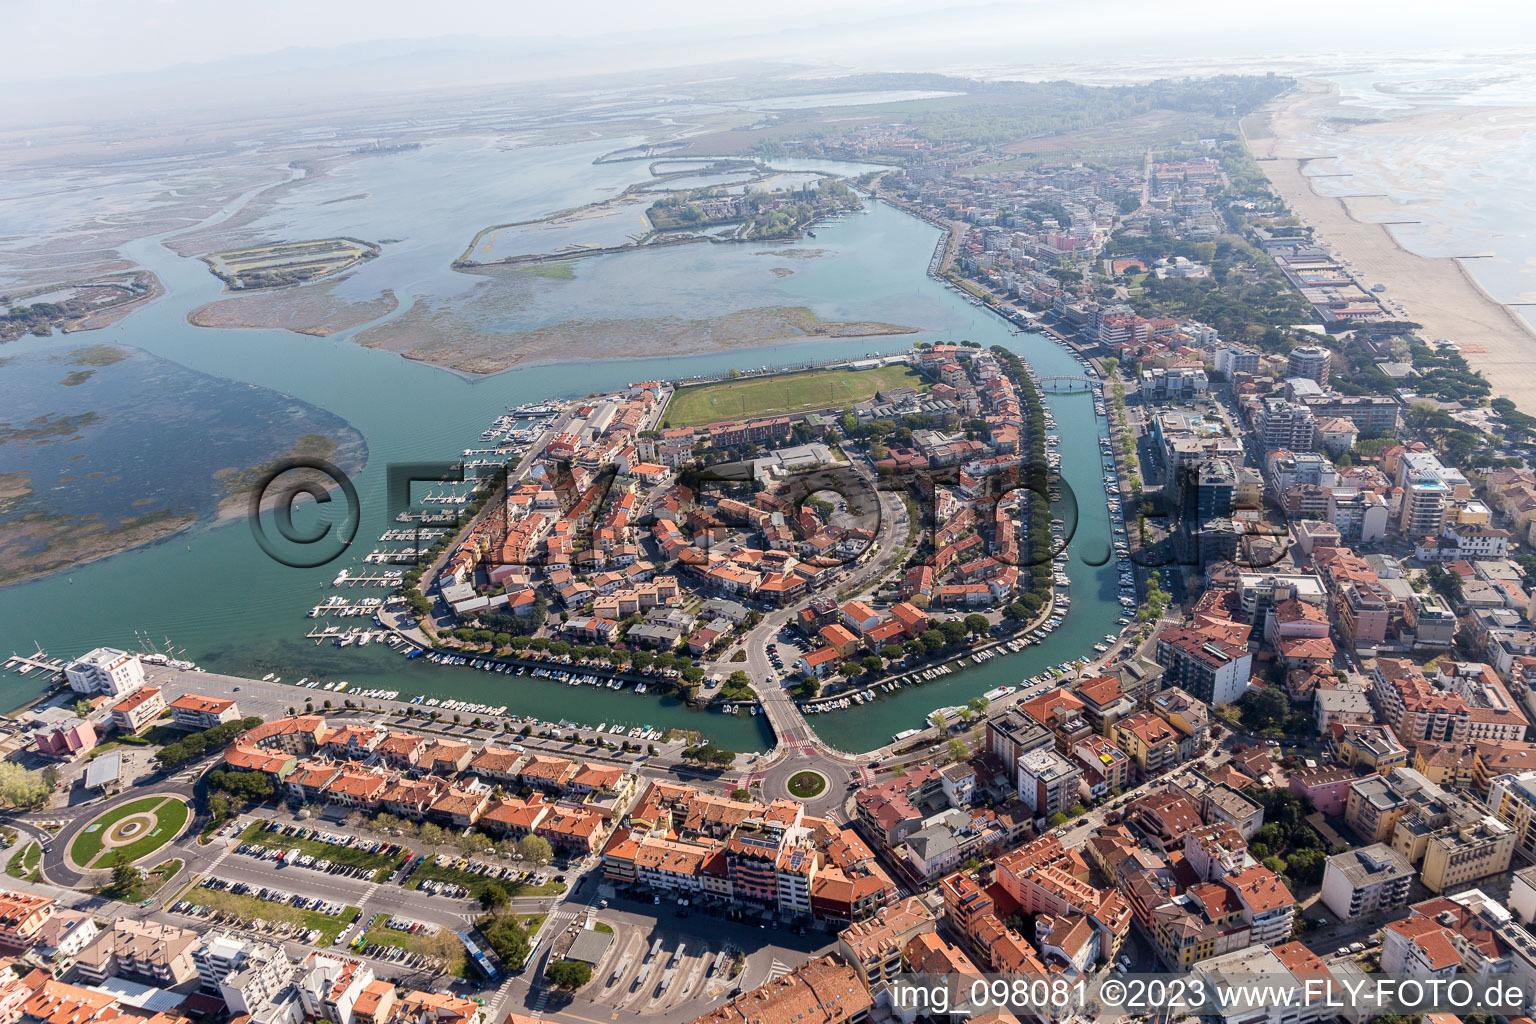 Grado im Bundesland Friaul-Julisch Venetien, Italien aus der Drohnenperspektive